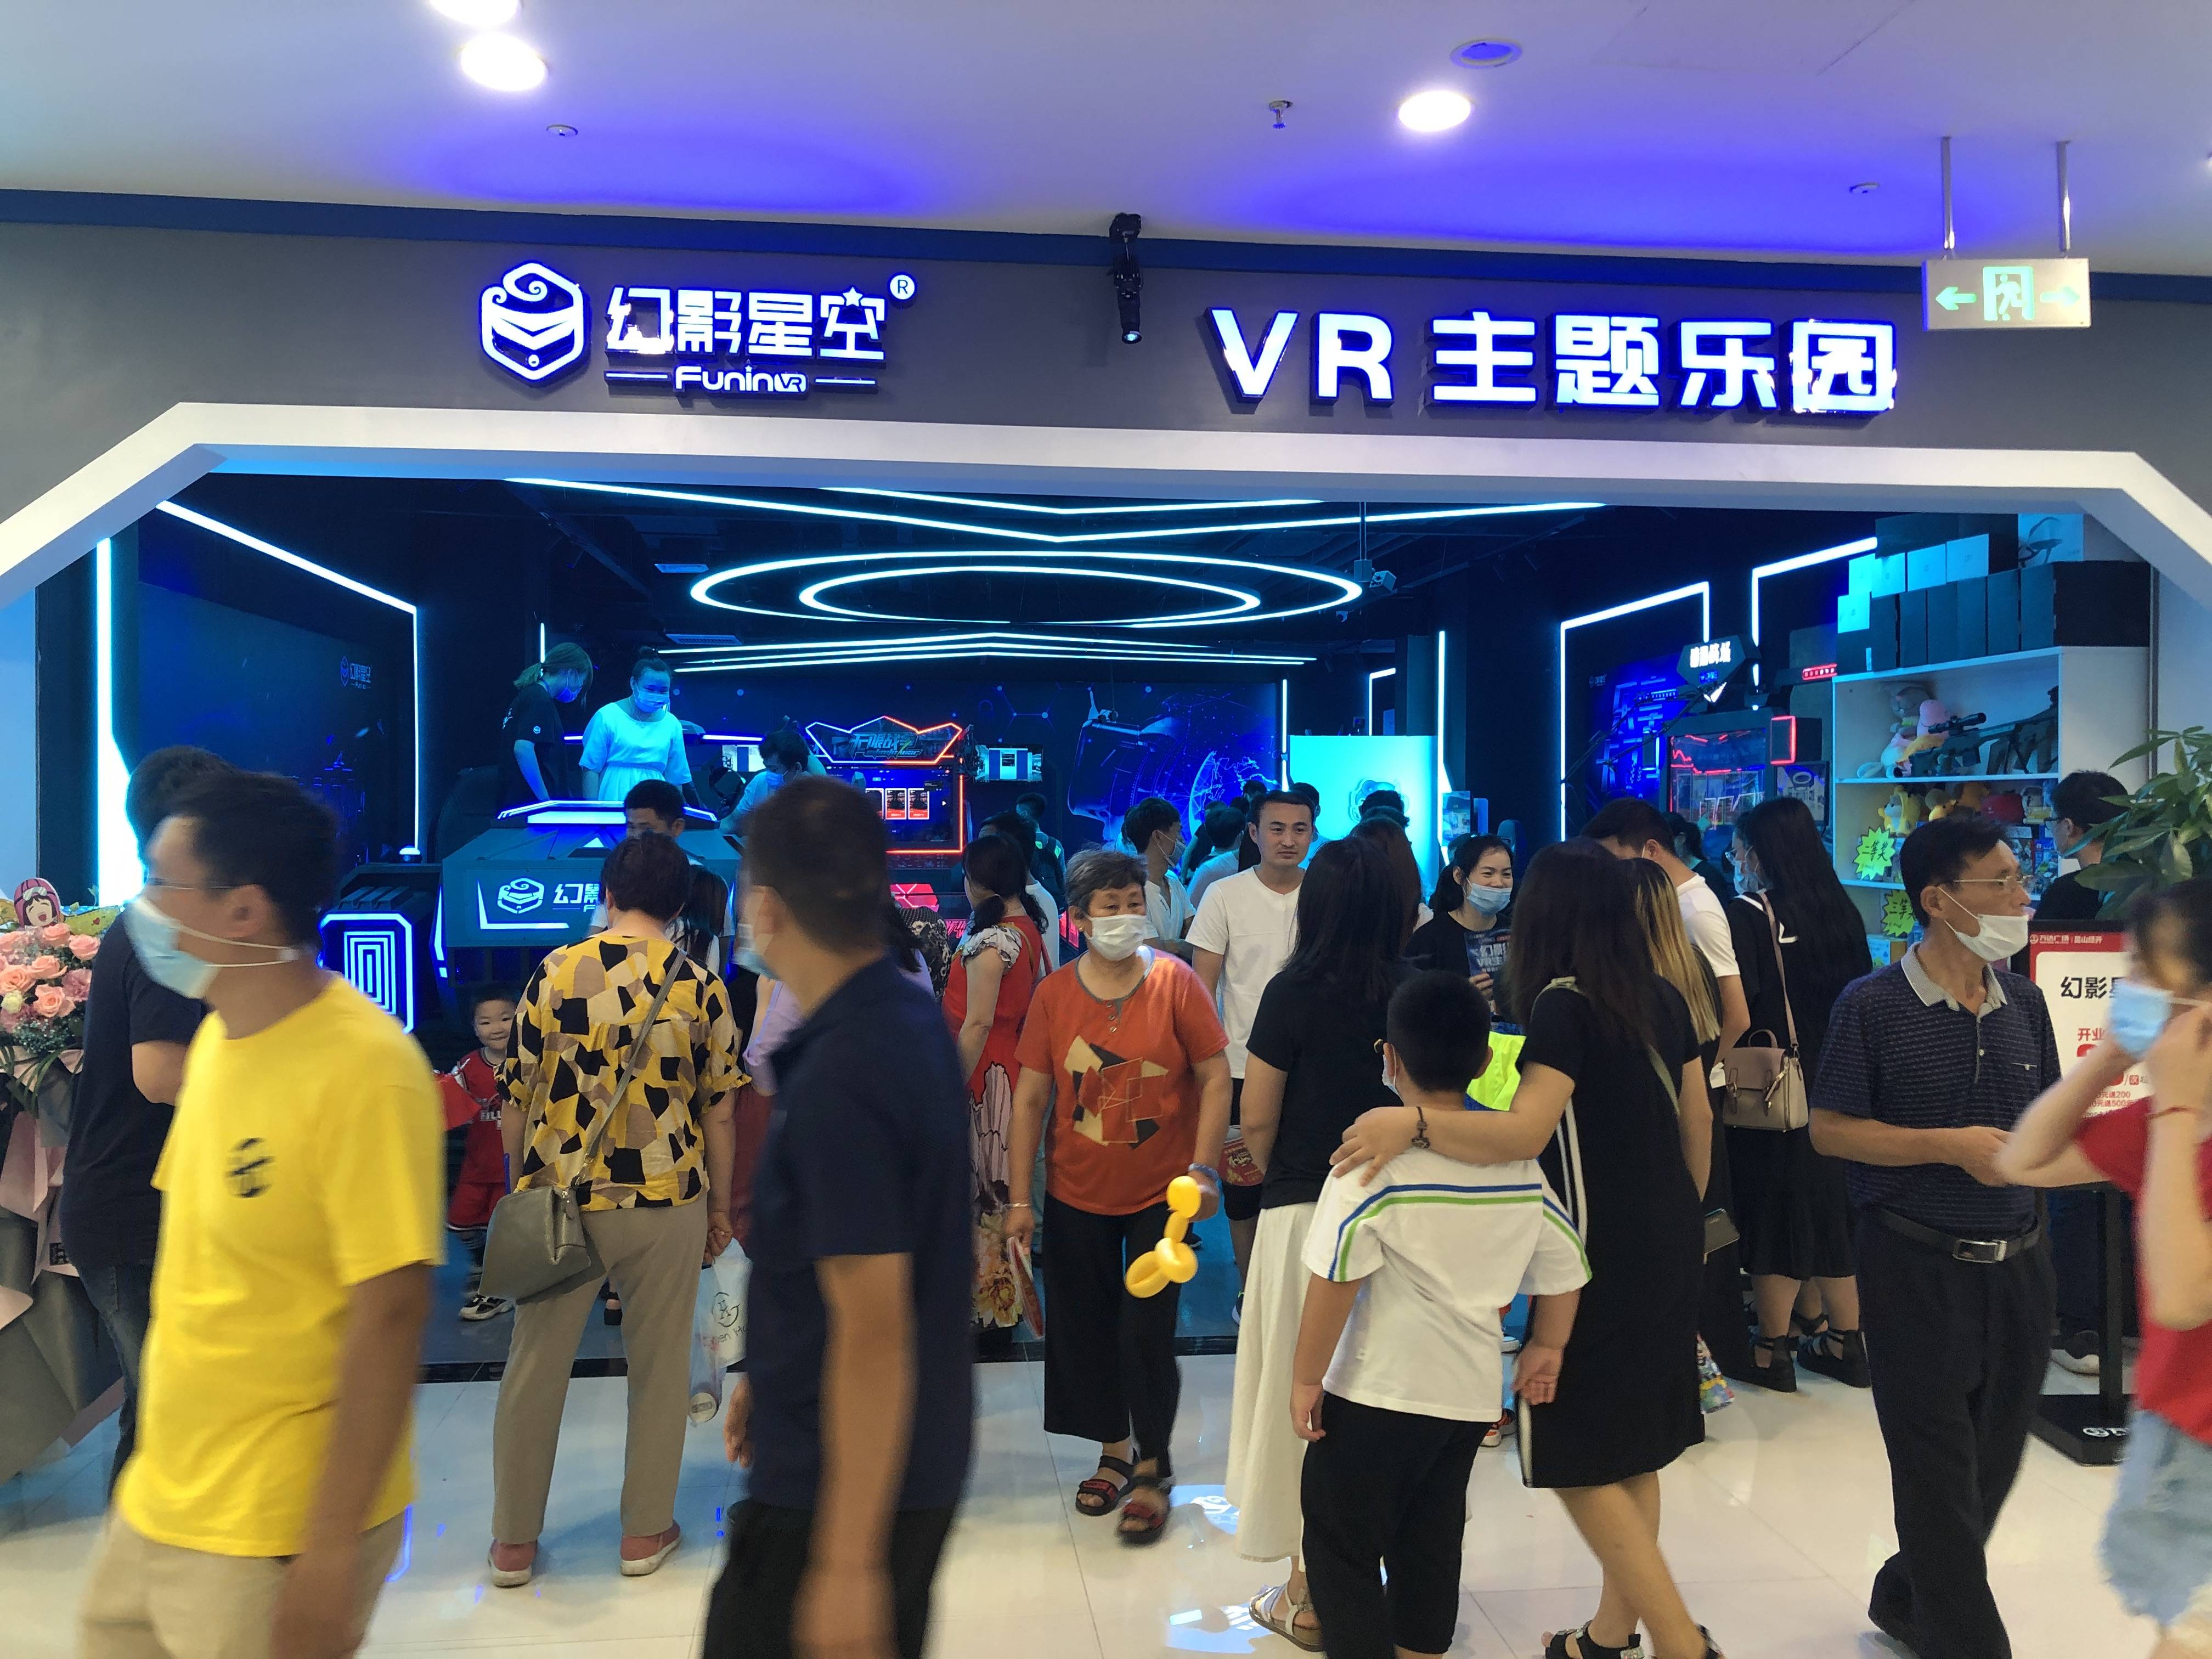 虚拟现实vr体验馆为什么会这么受欢迎吸引那么多人去玩呢?